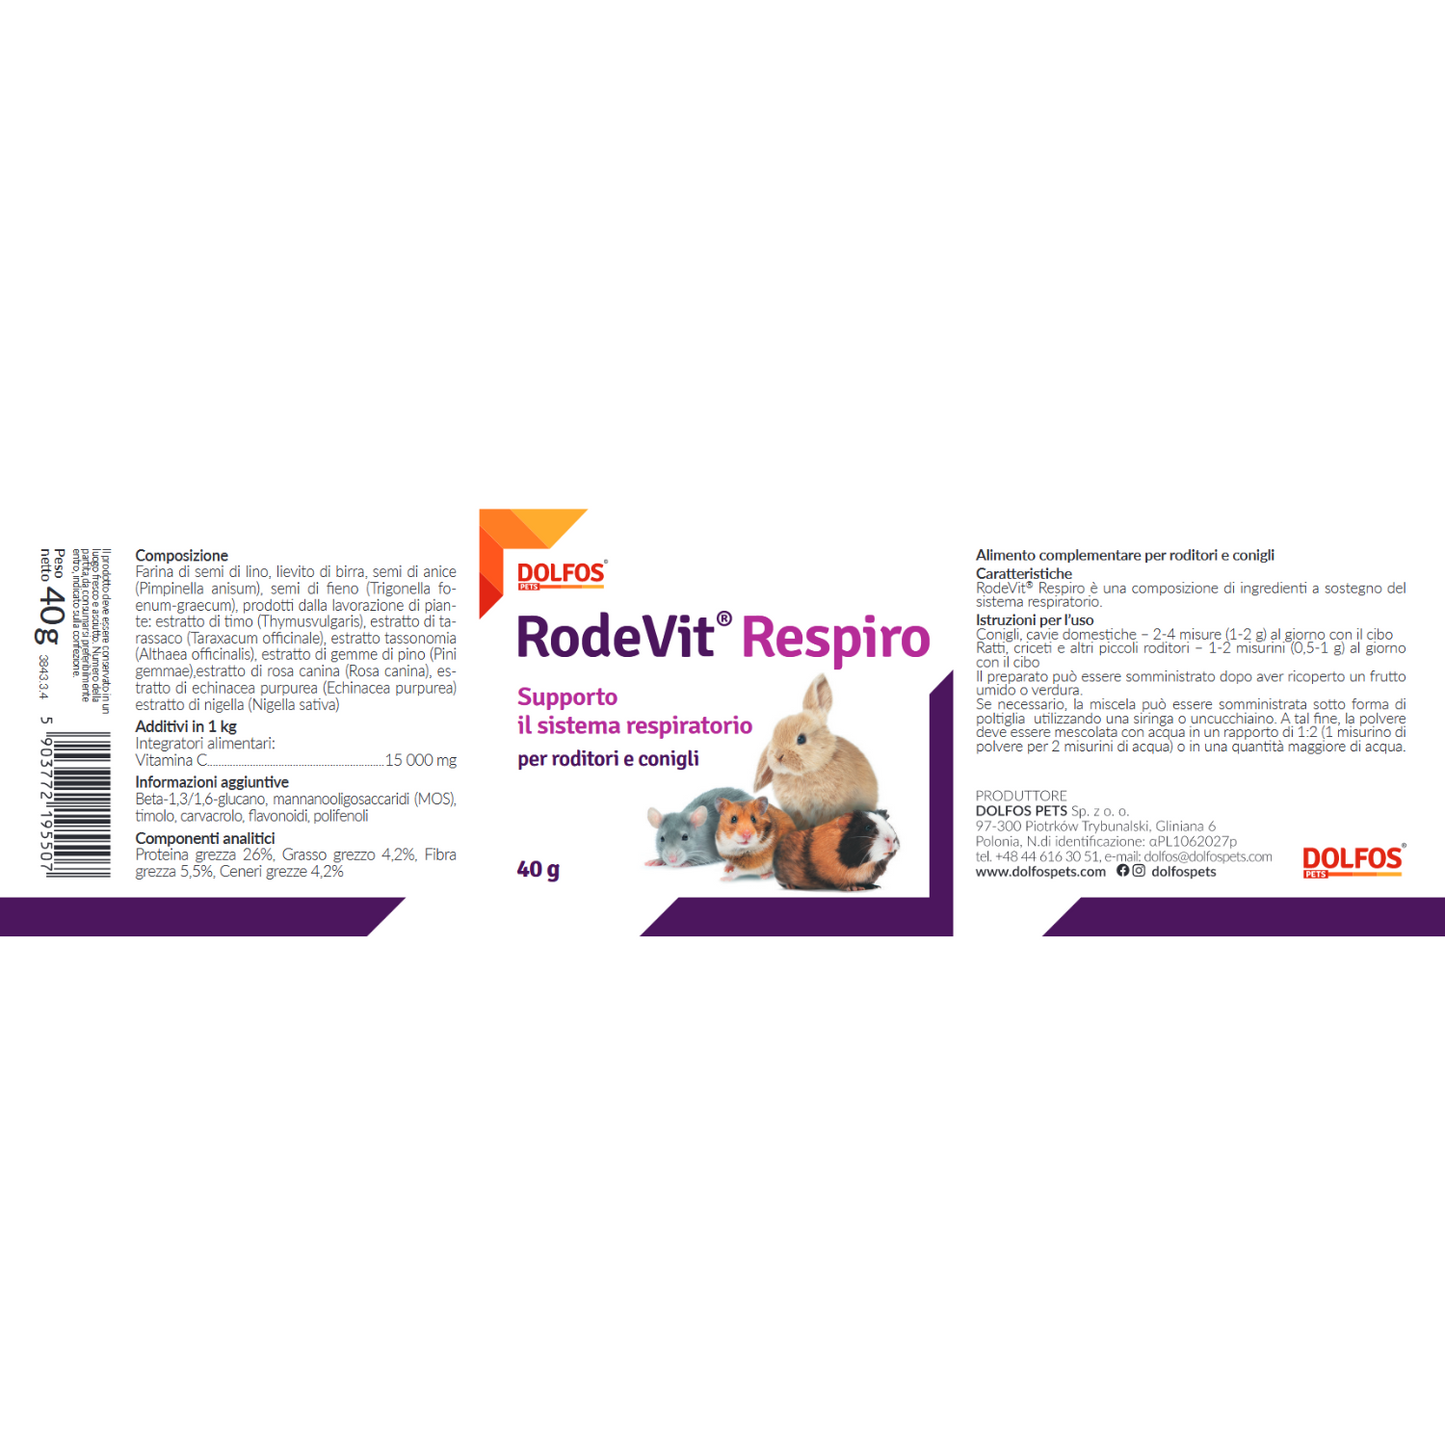 RodeVit Respiro 40 " .. supporto alle vie respiratorie di conigli e roditori ..."